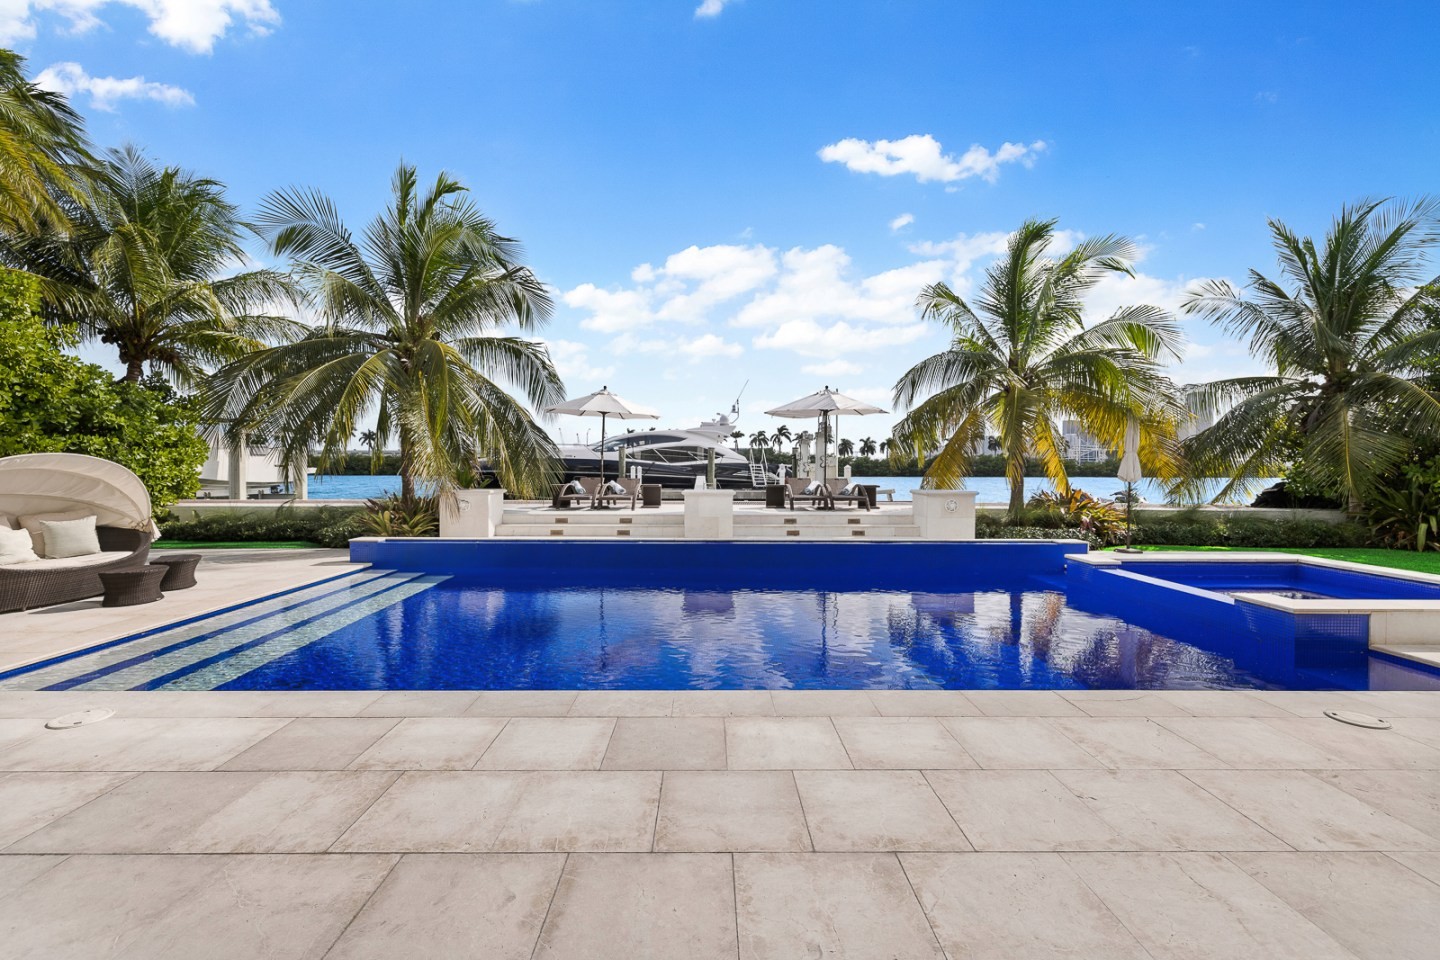 Floyd Mayweather compra mansão em Miami por R$ 94 milhões (Foto: Divulgação/Douglas Elliman Real Estate)